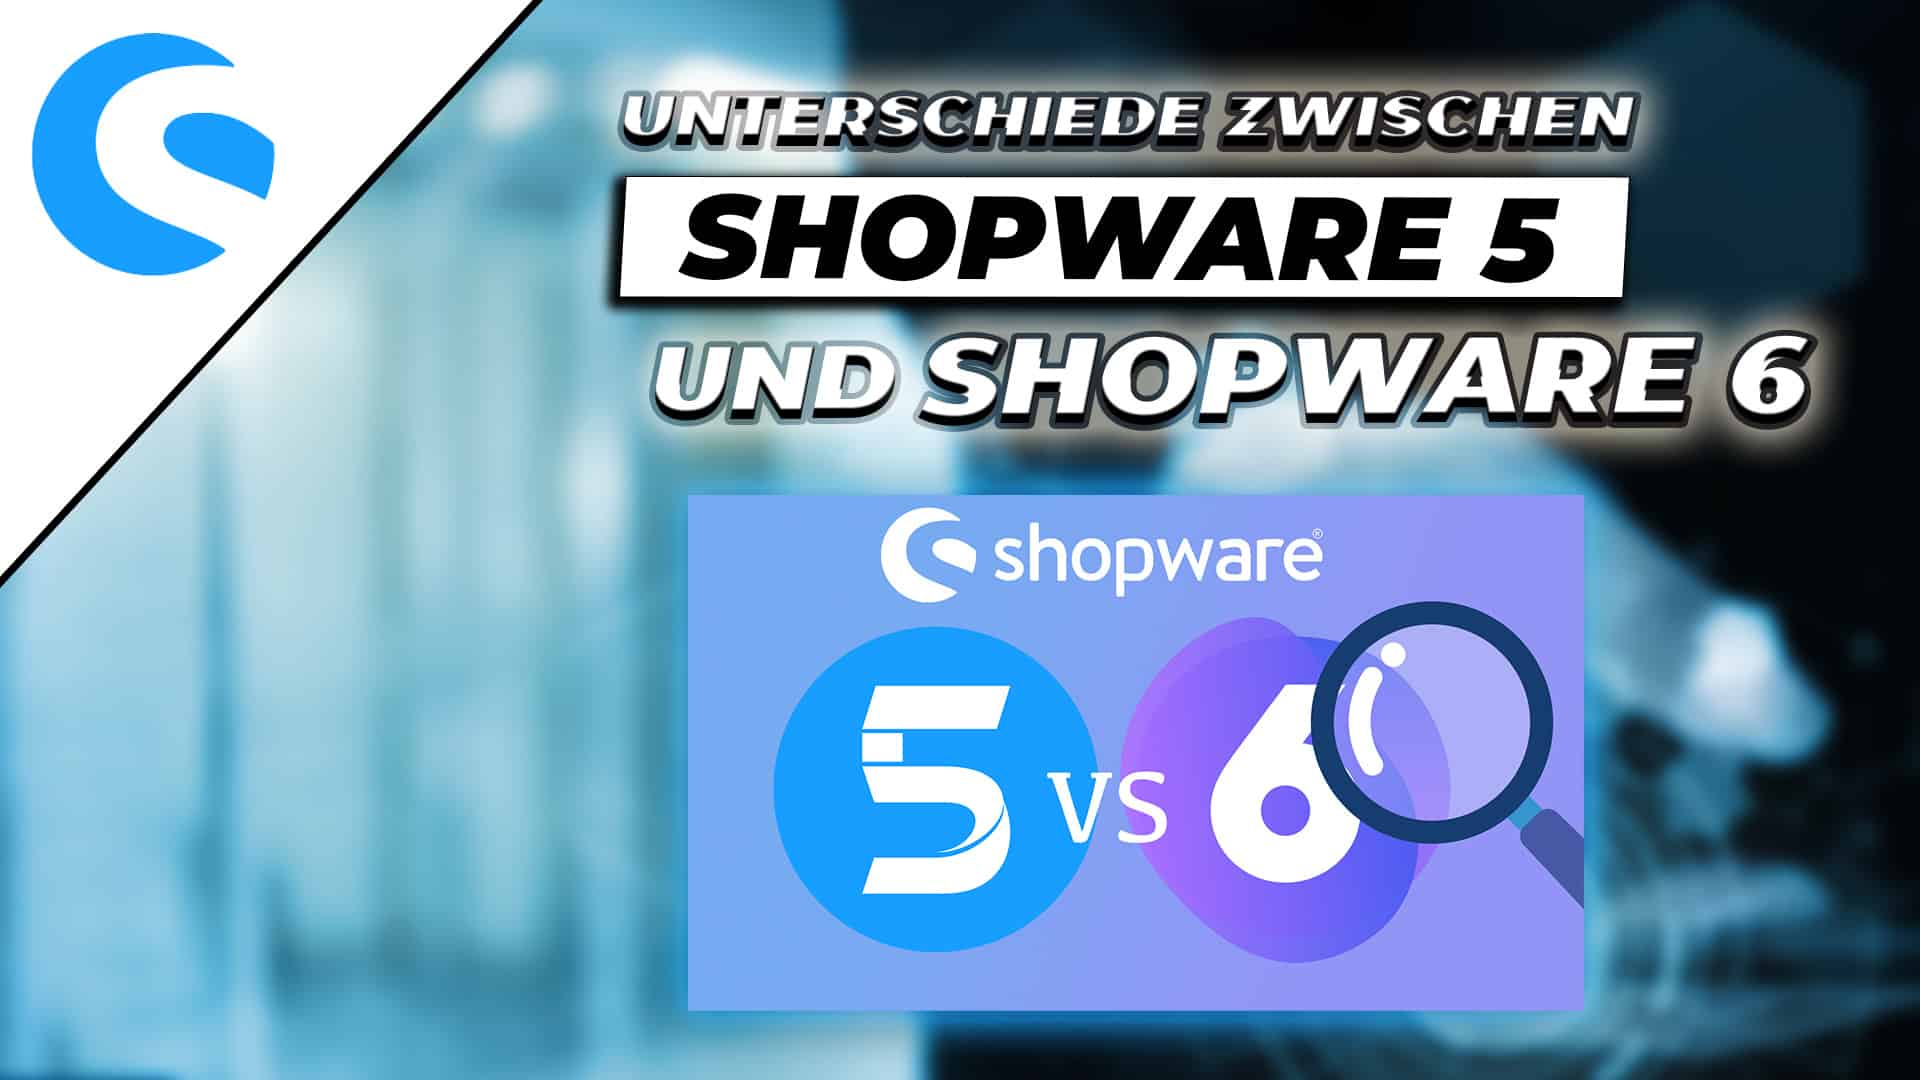 Was ist der Unterschied zwischen Shopware 5 und Shopware 6?